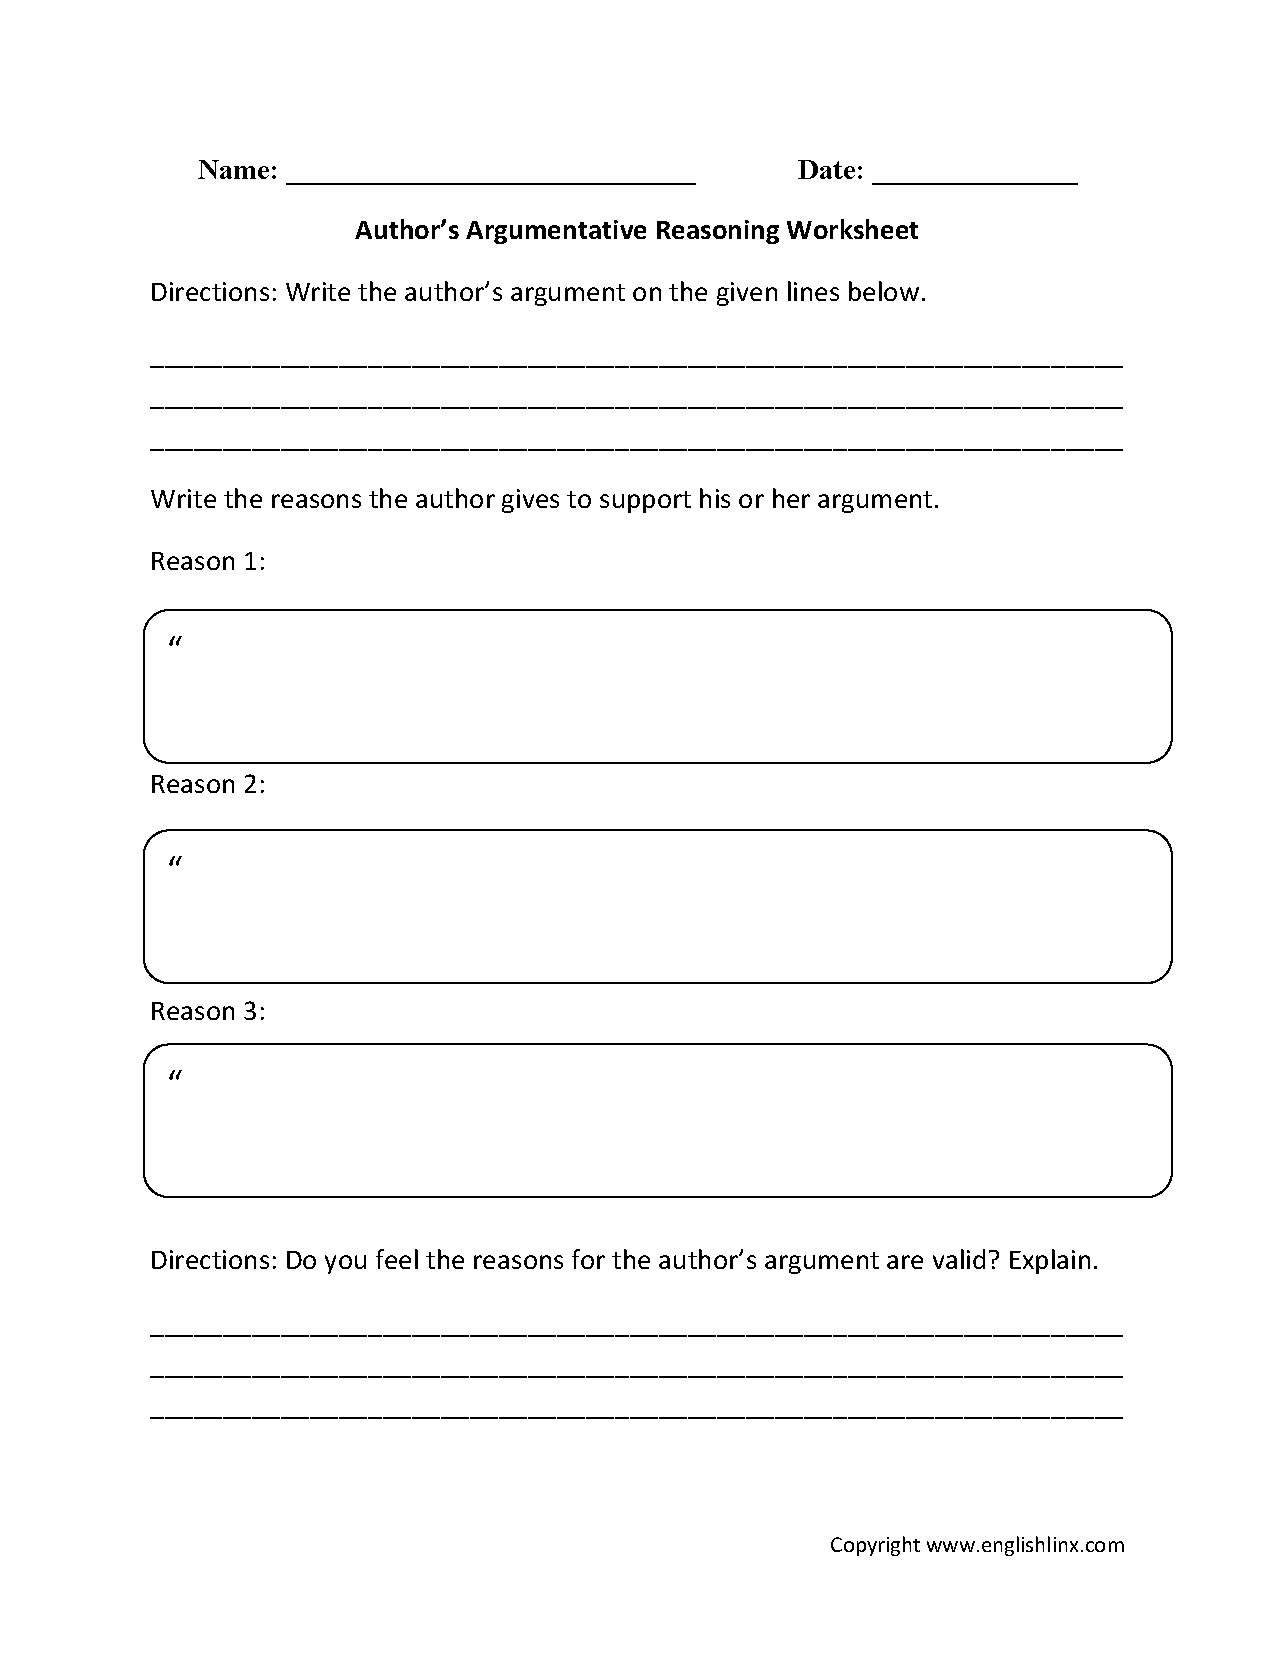 reading-worksheets-argumentative-worksheets